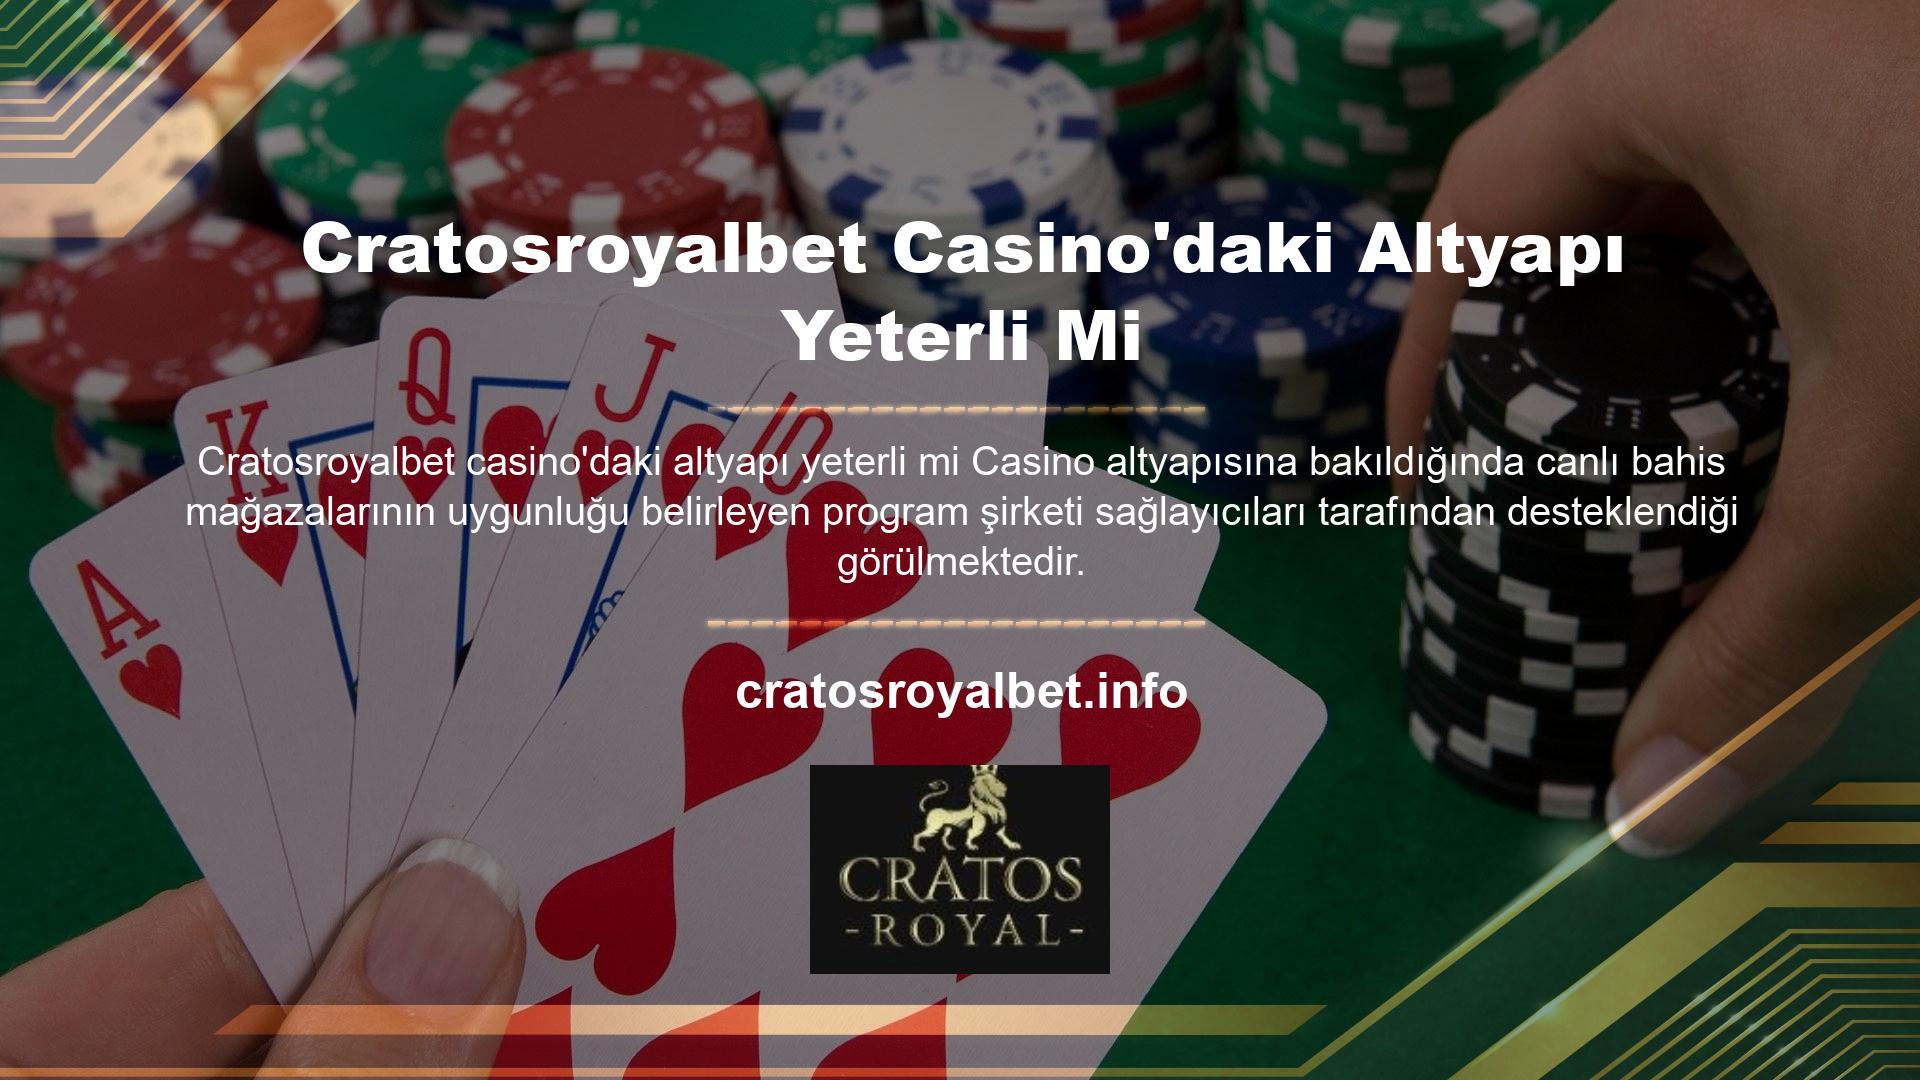 Cratosroyalbet Casino'daki Altyapı Yeterli Mi